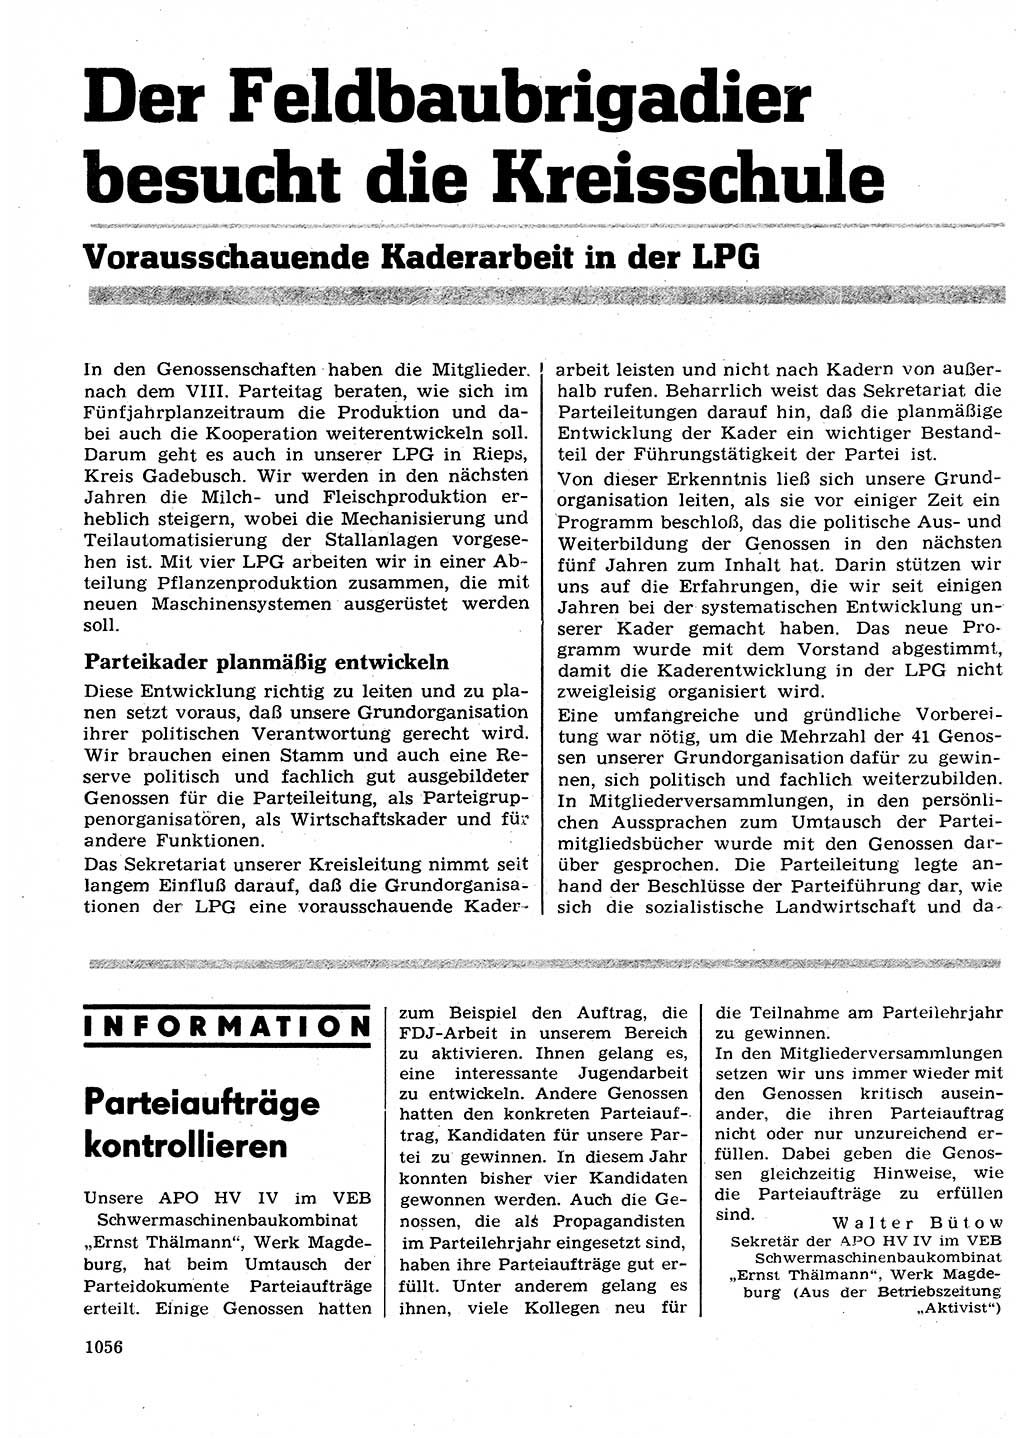 Neuer Weg (NW), Organ des Zentralkomitees (ZK) der SED (Sozialistische Einheitspartei Deutschlands) für Fragen des Parteilebens, 26. Jahrgang [Deutsche Demokratische Republik (DDR)] 1971, Seite 1056 (NW ZK SED DDR 1971, S. 1056)